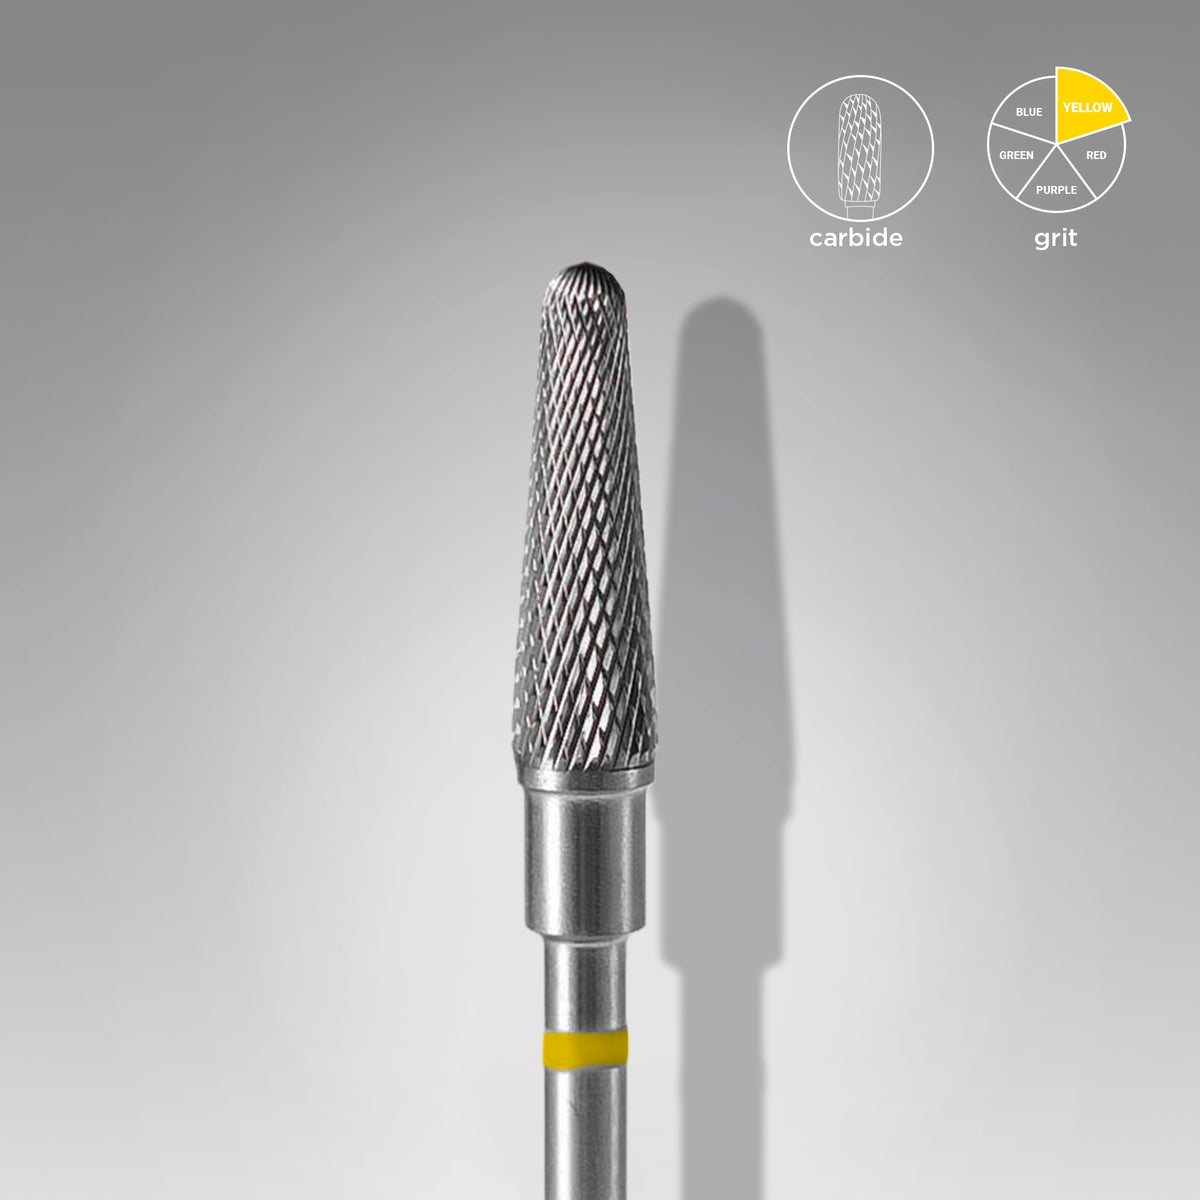 Carbide nail drill bit frustum yellow EXPERT head diameter 4 mm / working part 13 mm